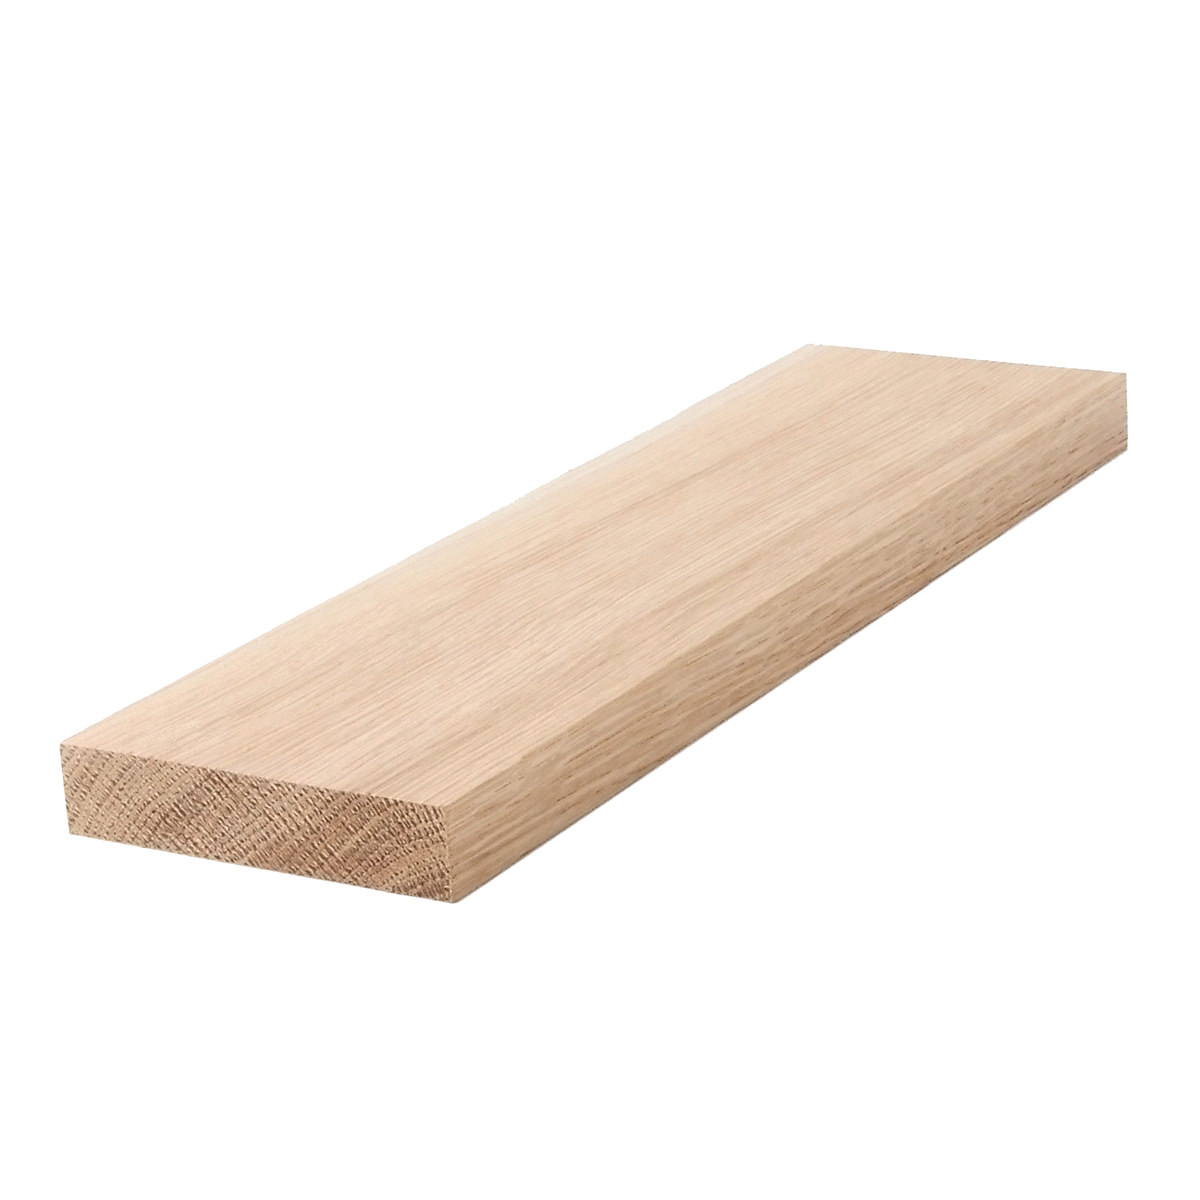 1x4 (3/4" x 31/2") White Oak S4S Lumber, Boards, & Flat